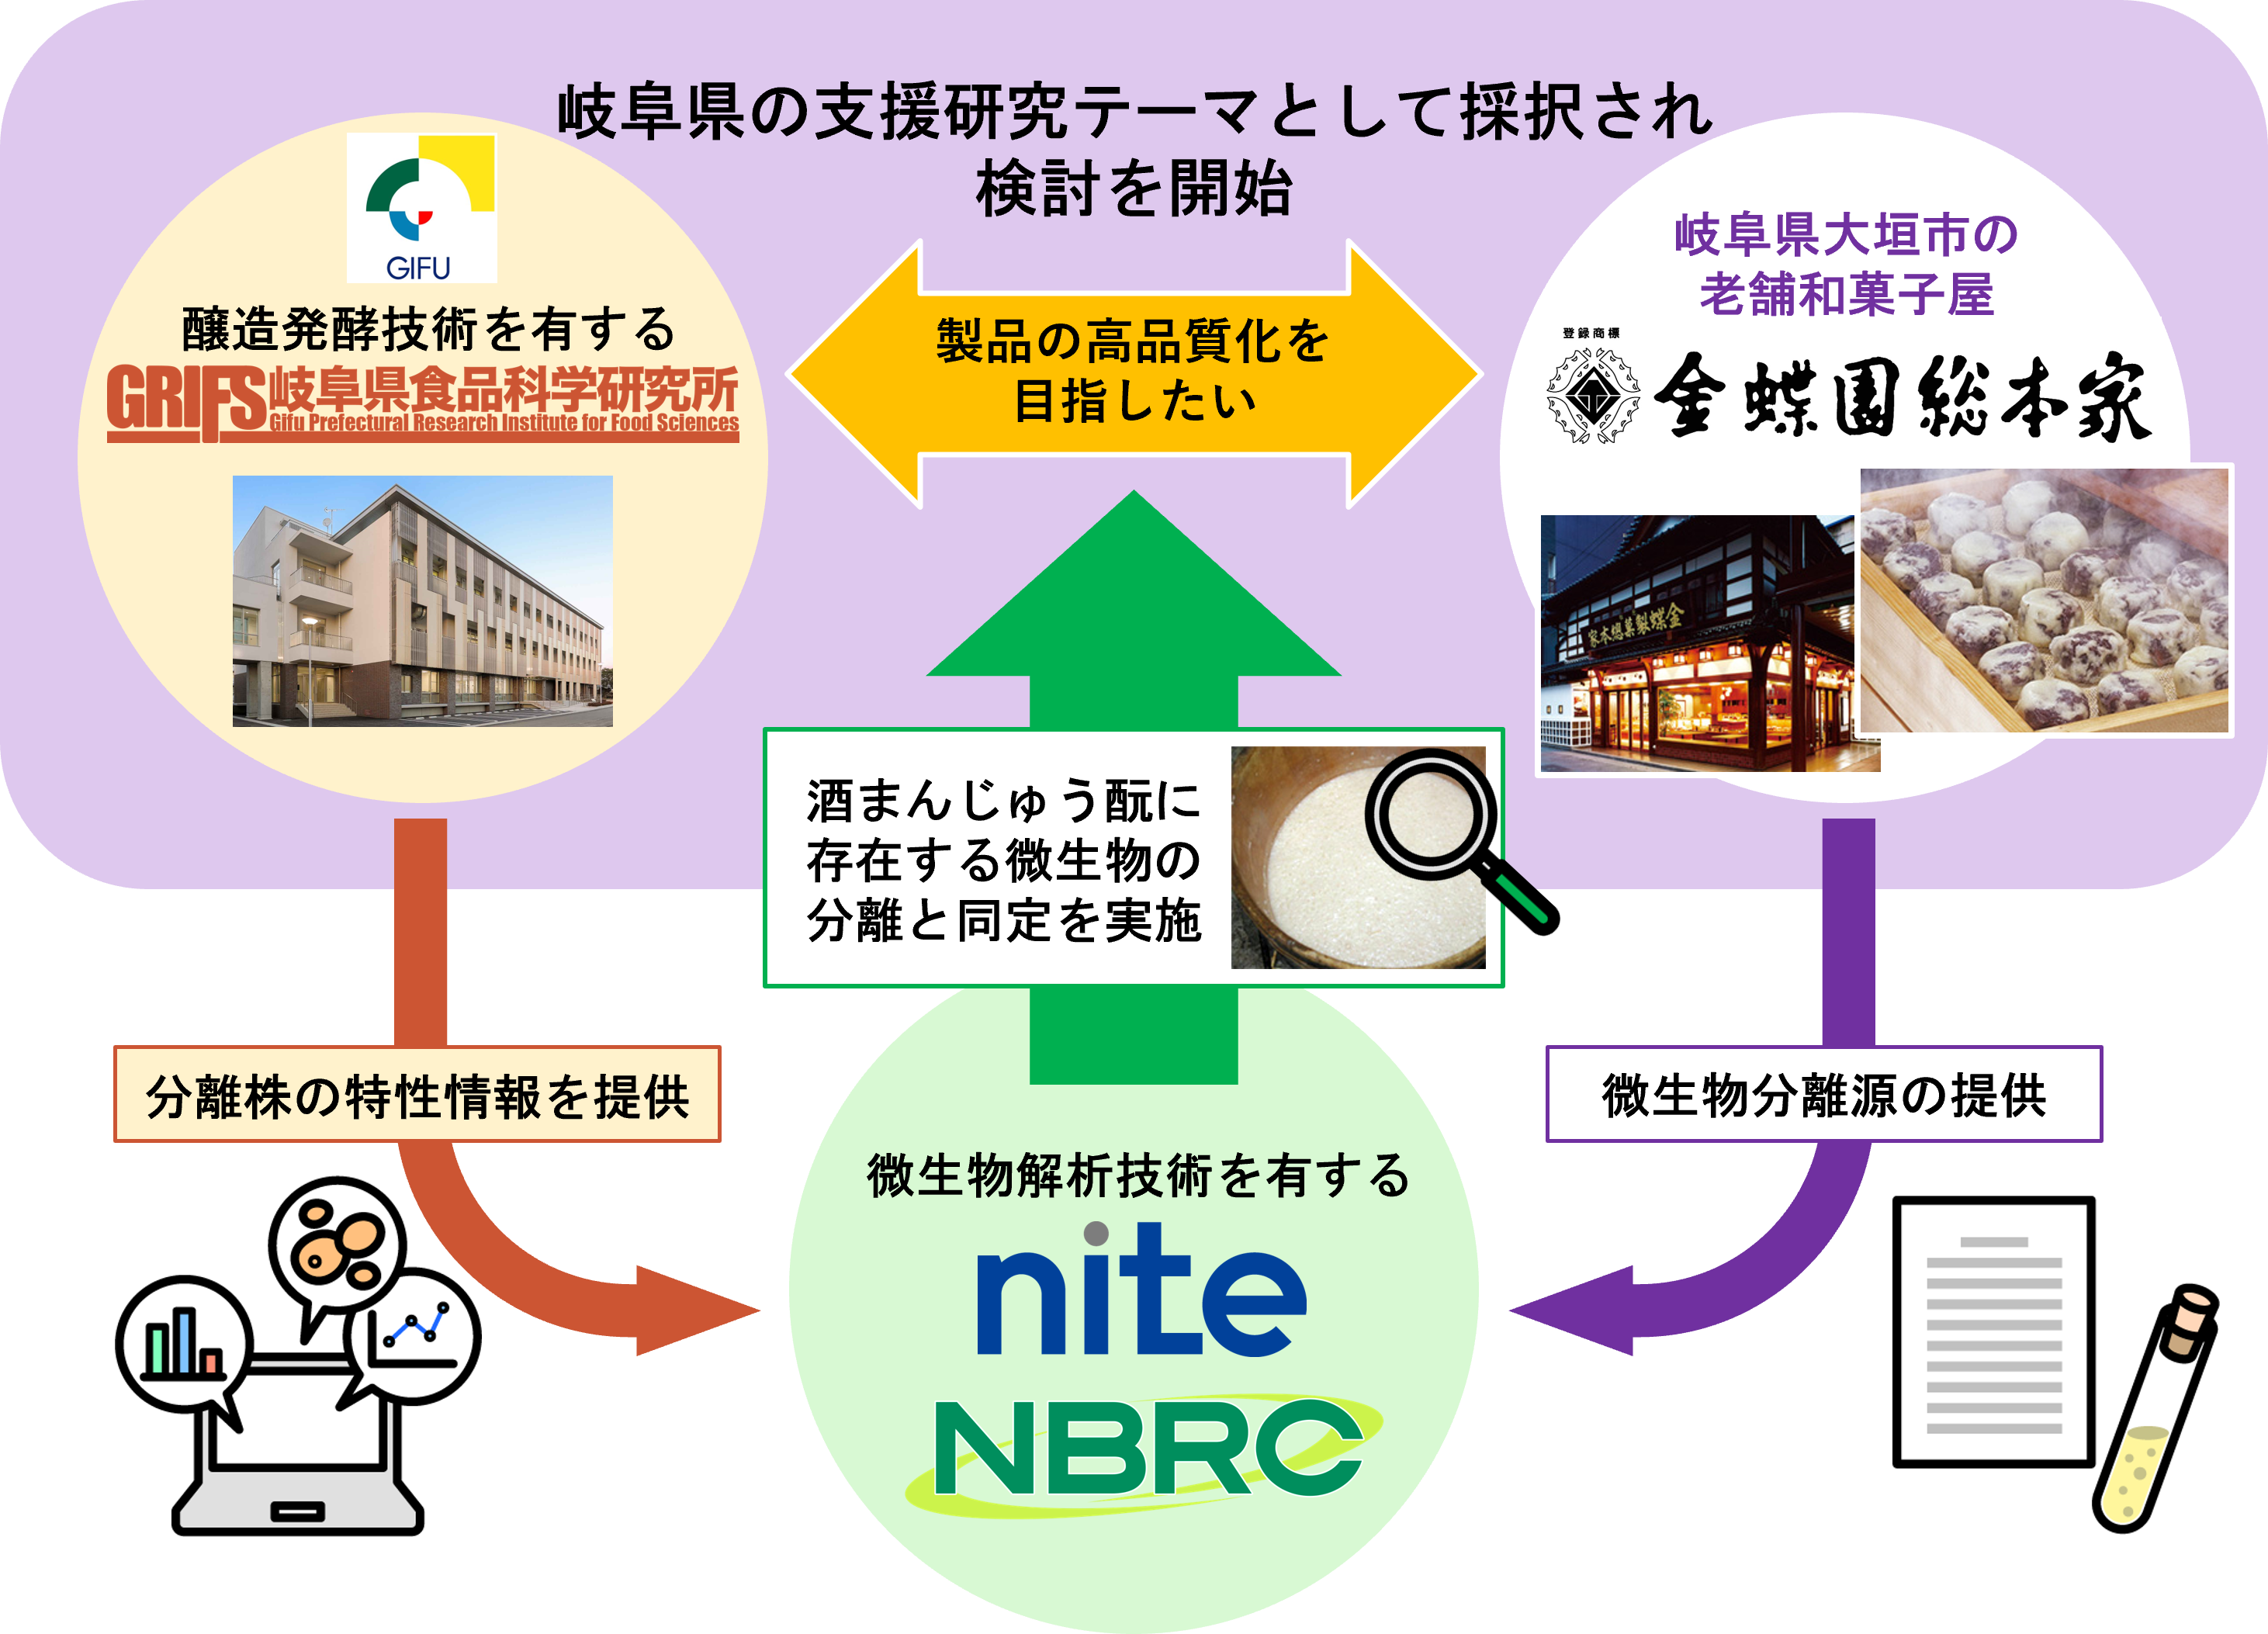 ナイト、岐阜県食品科学研究所、金蝶園総本家の役割分担を示した図